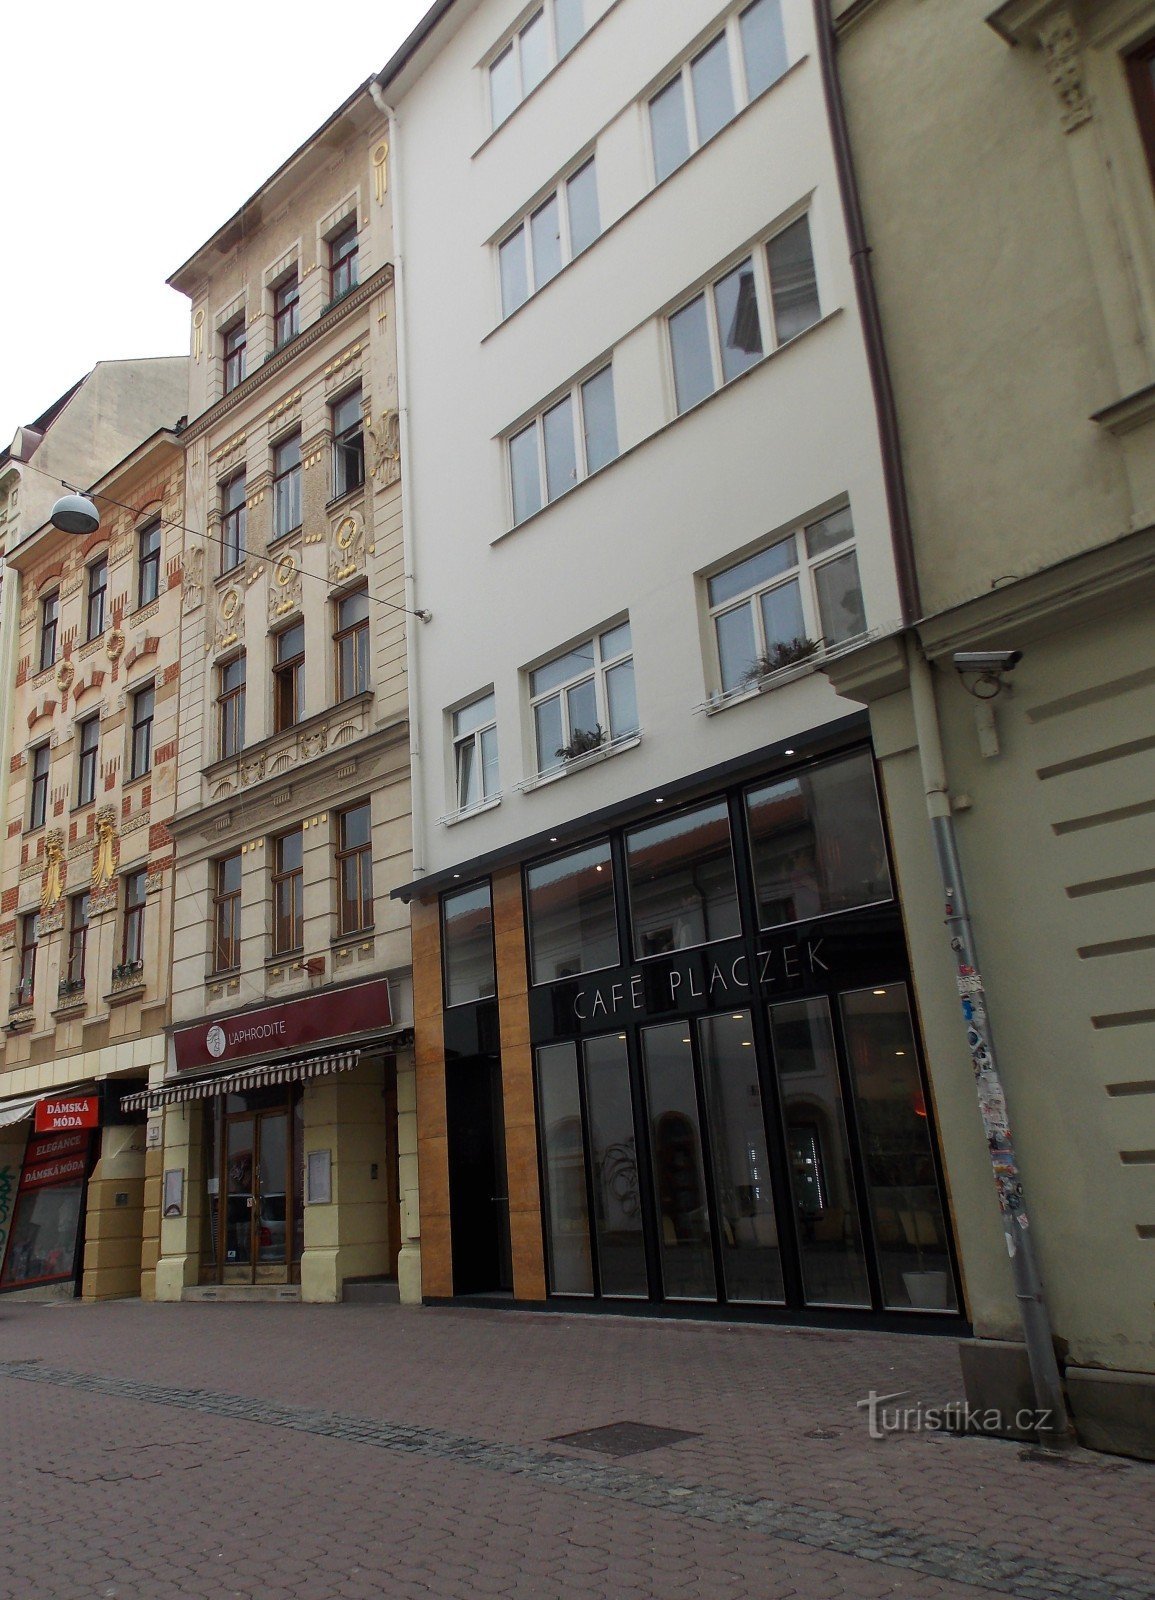 Easter Brno, al doilea oraș ca mărime al Republicii Cehe